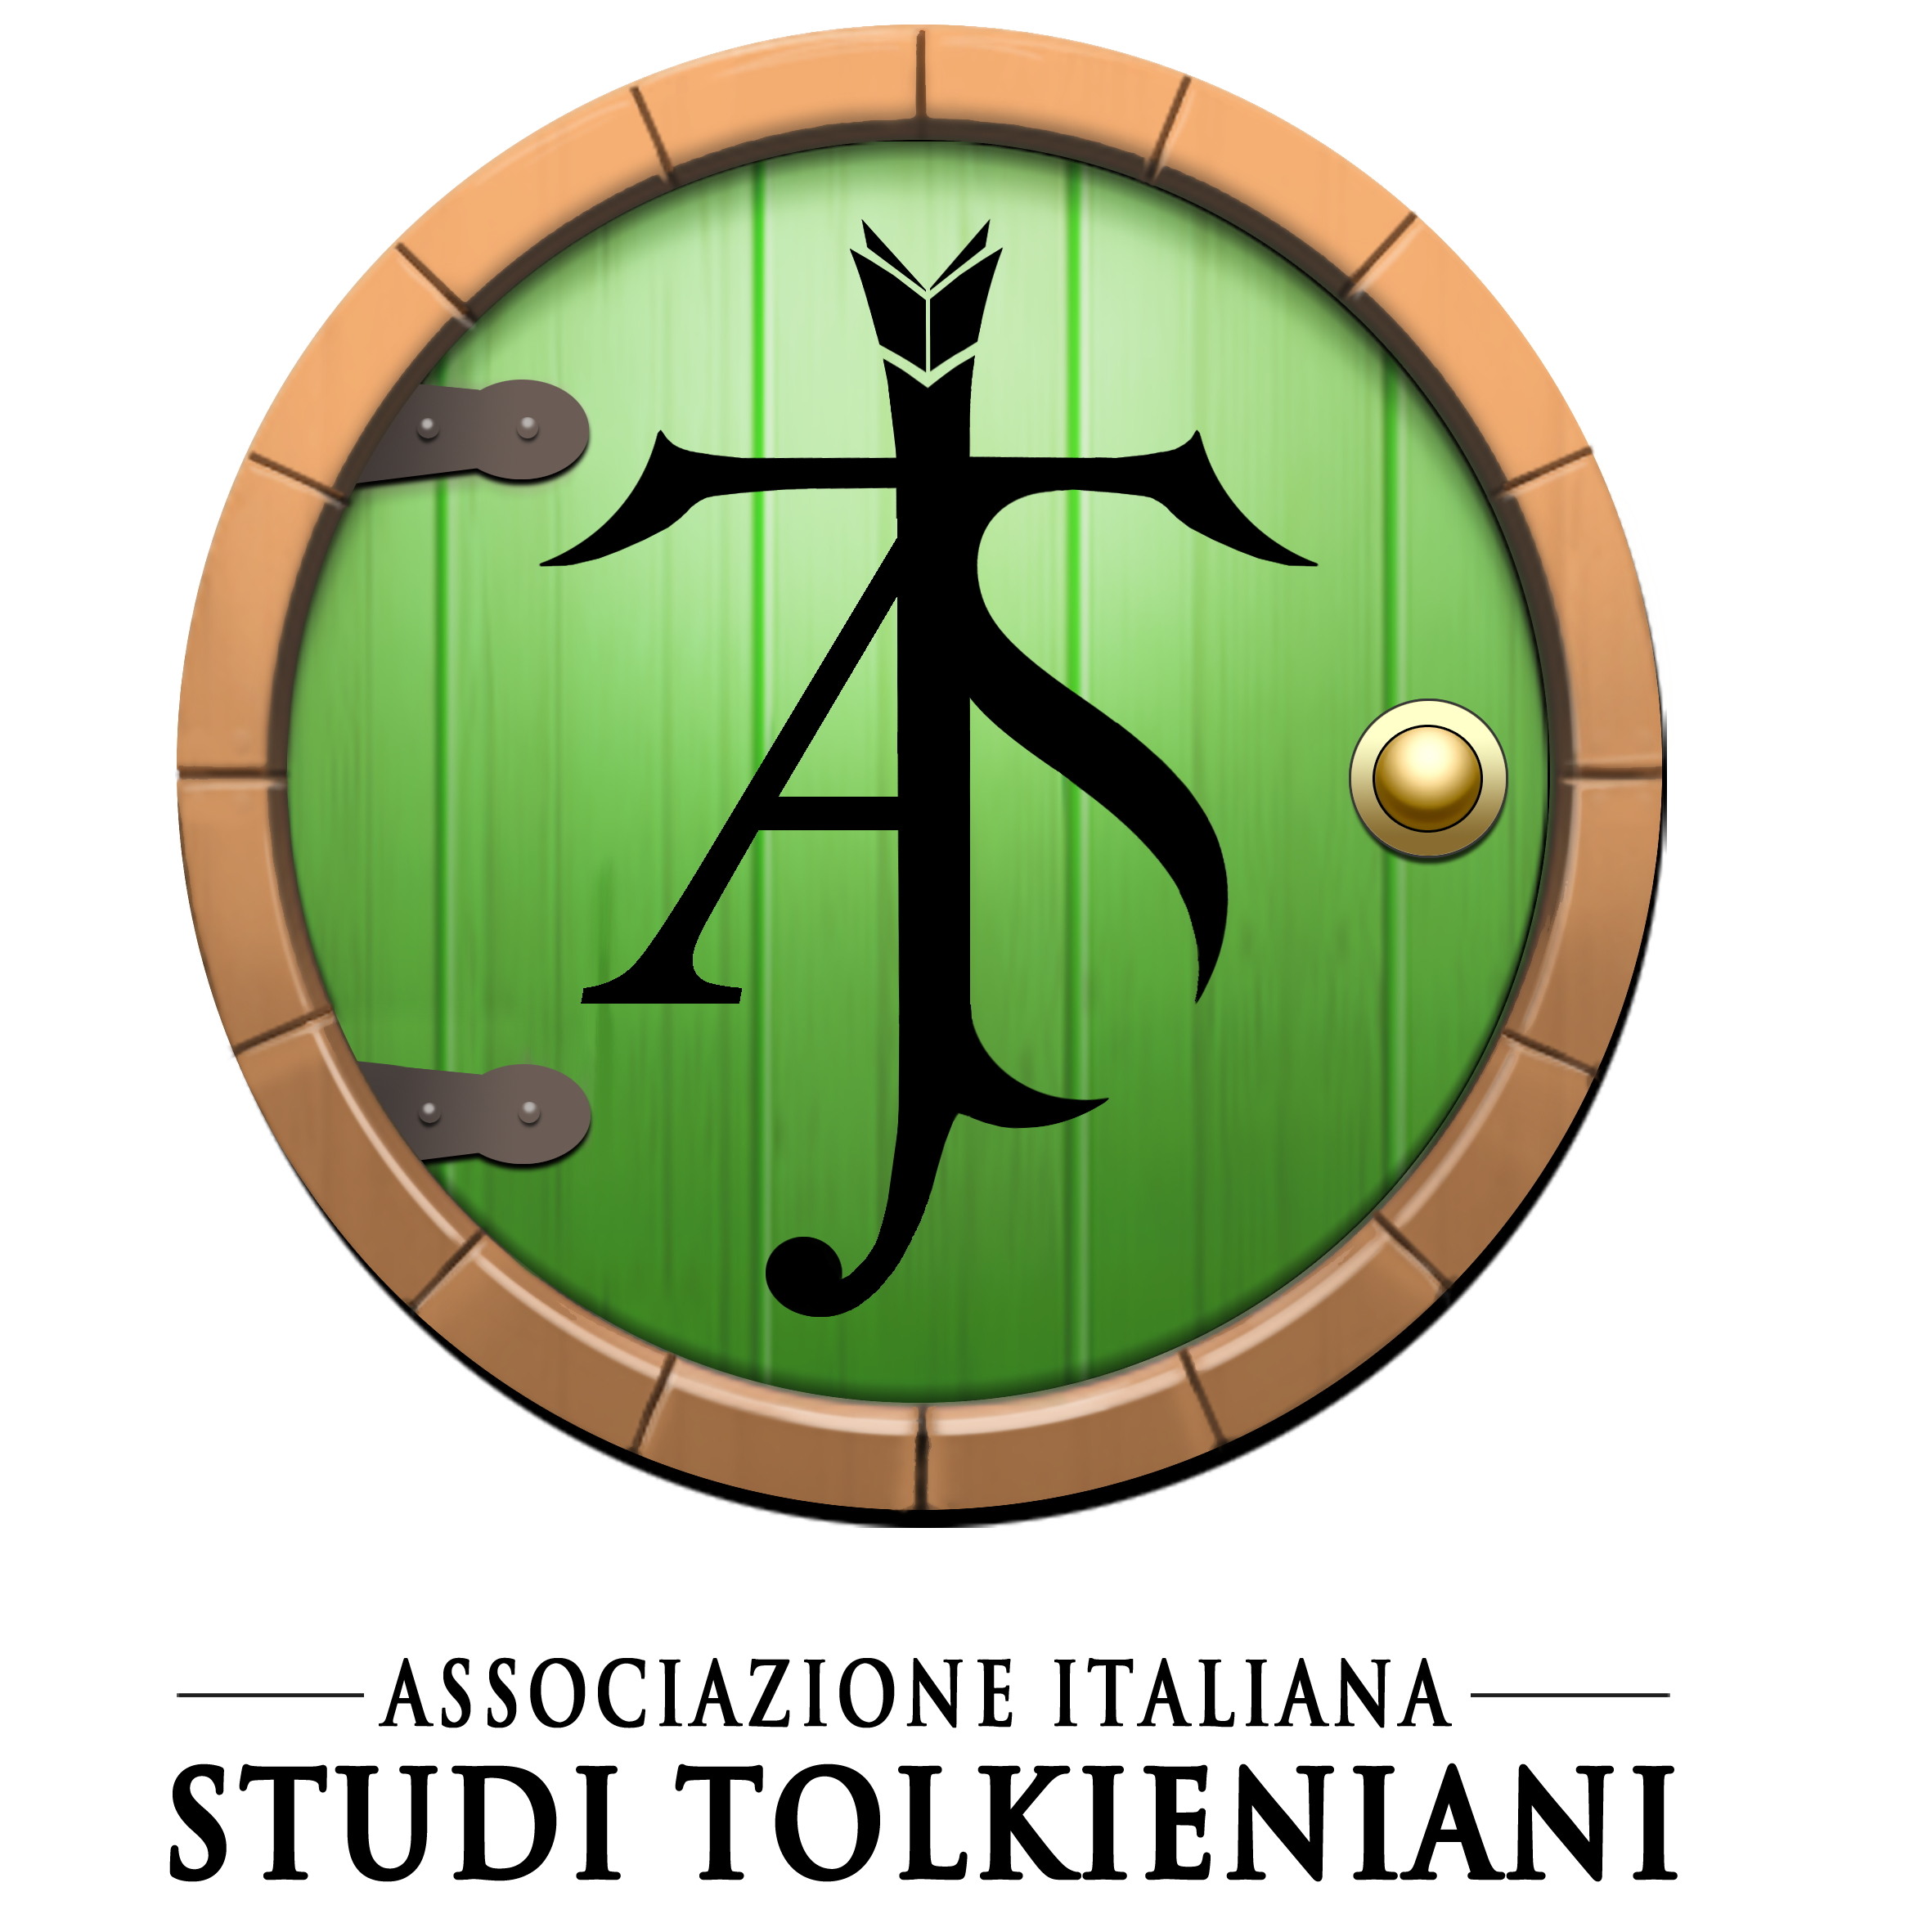 AIST - ASSOCIAZIONE ITALIANA STUDI TOLKIENIANI